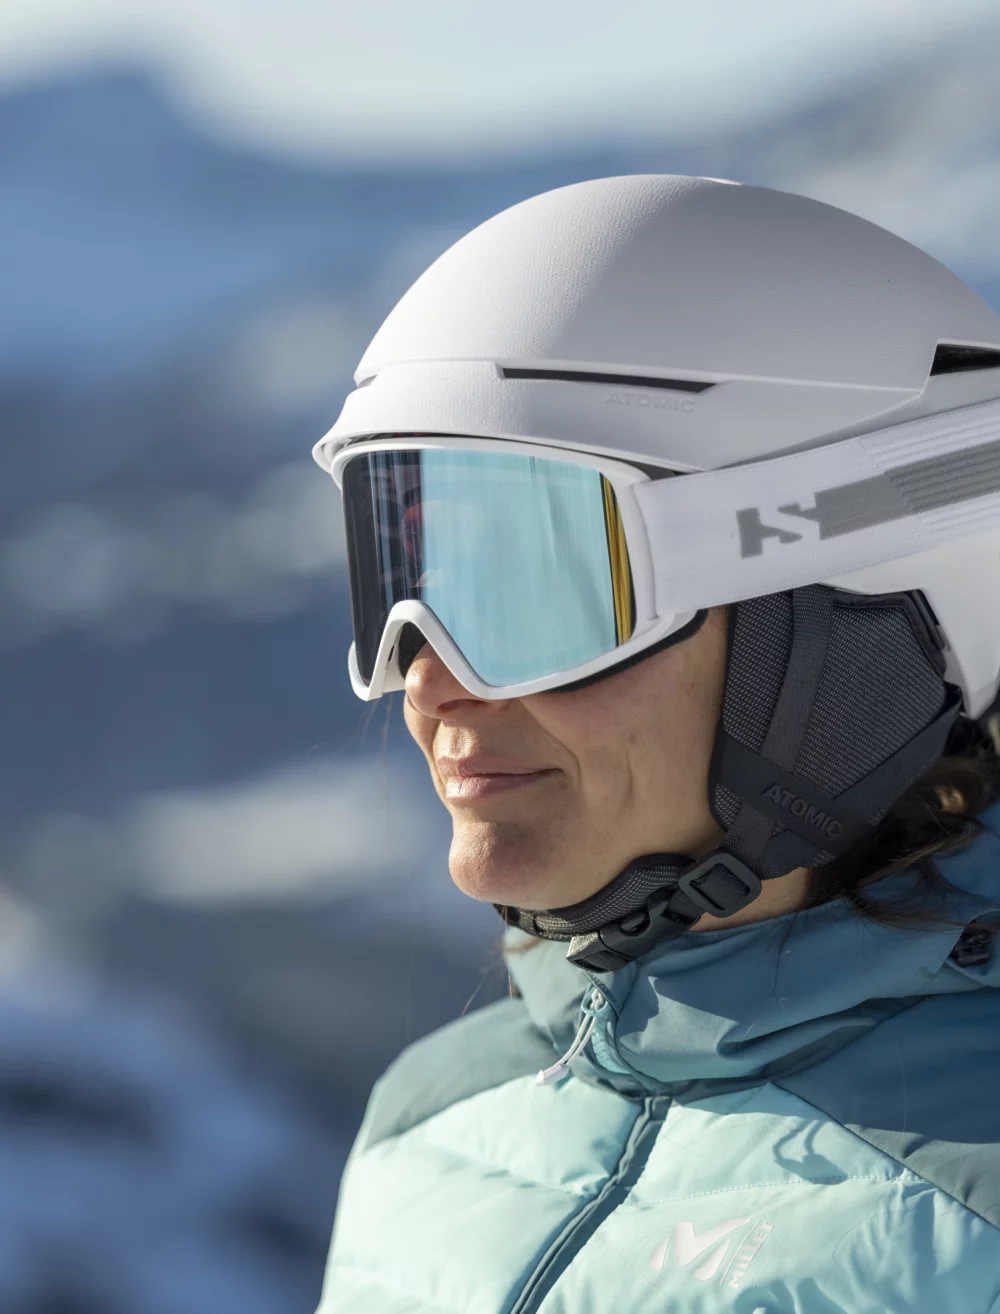 Les 6 accessoires indispensables pour réussir son séjour au ski